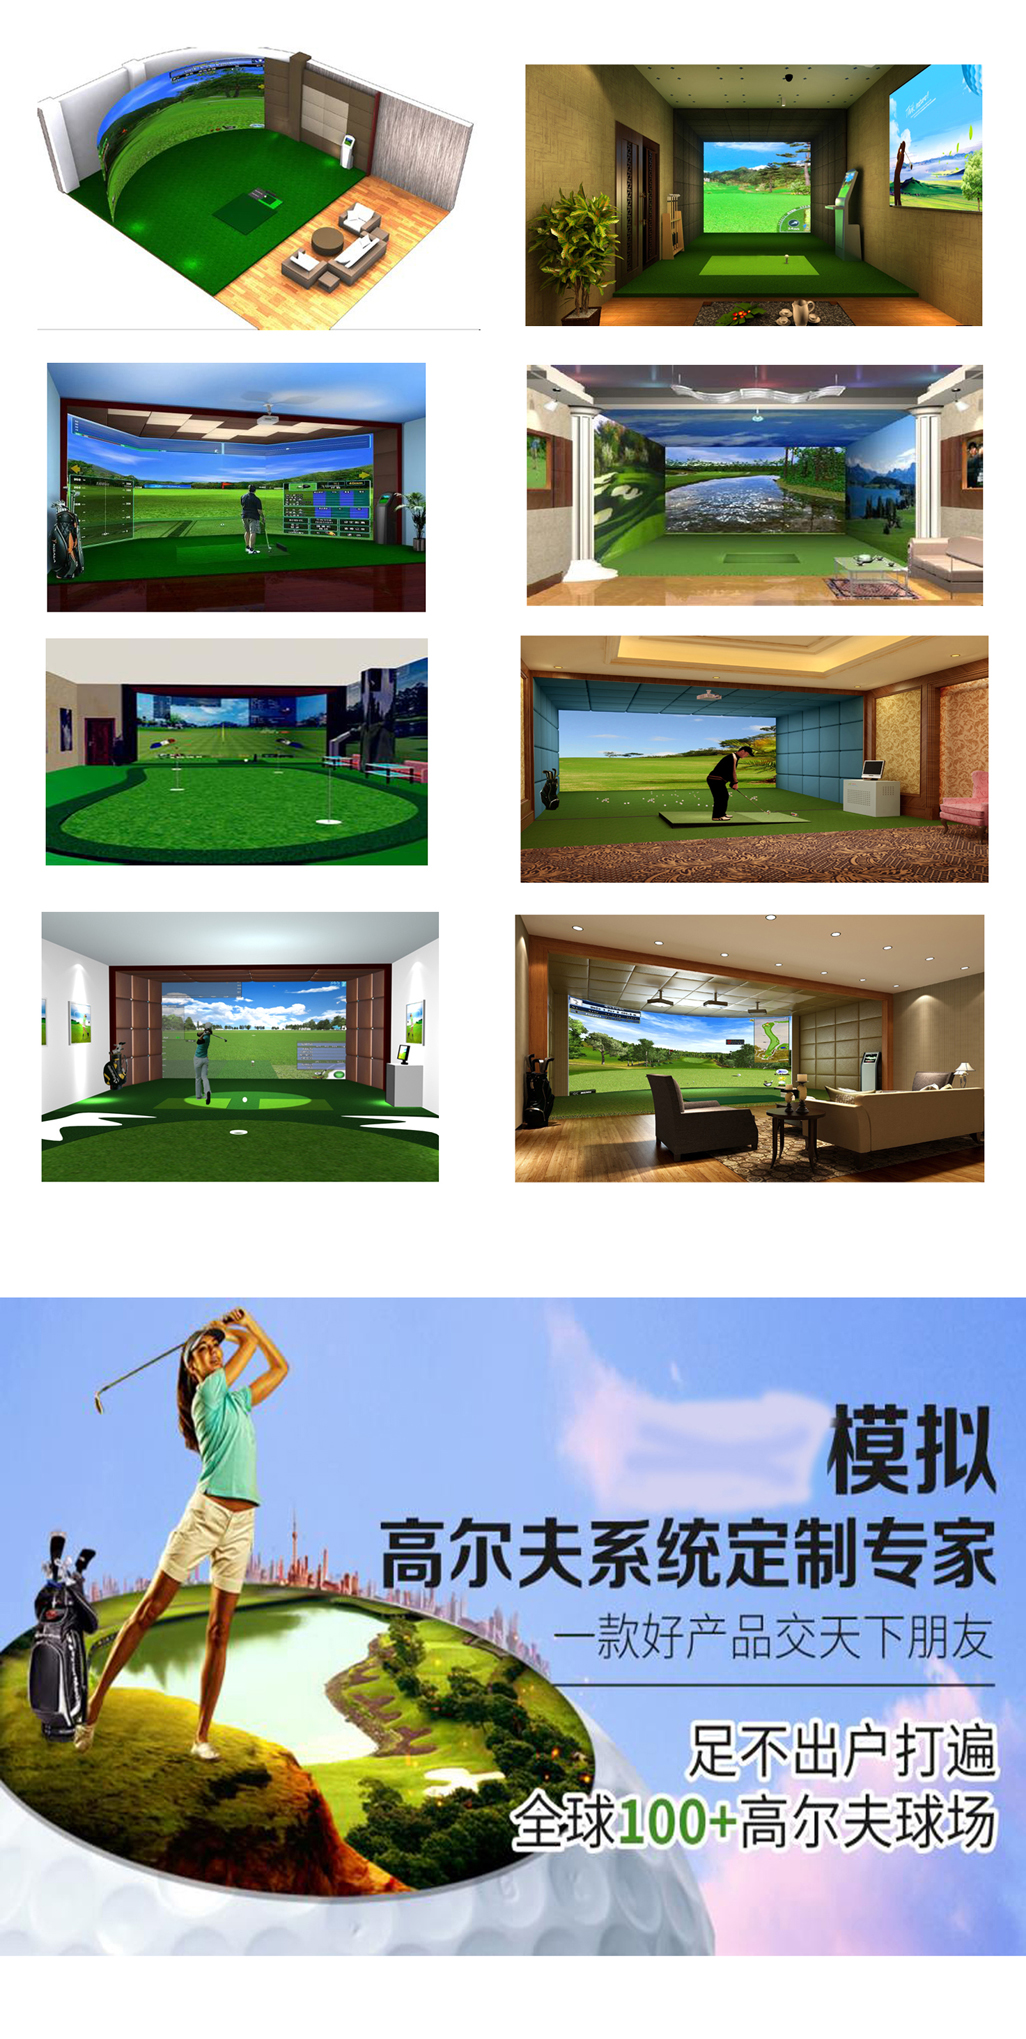 模拟高尔夫设备 68.jpg